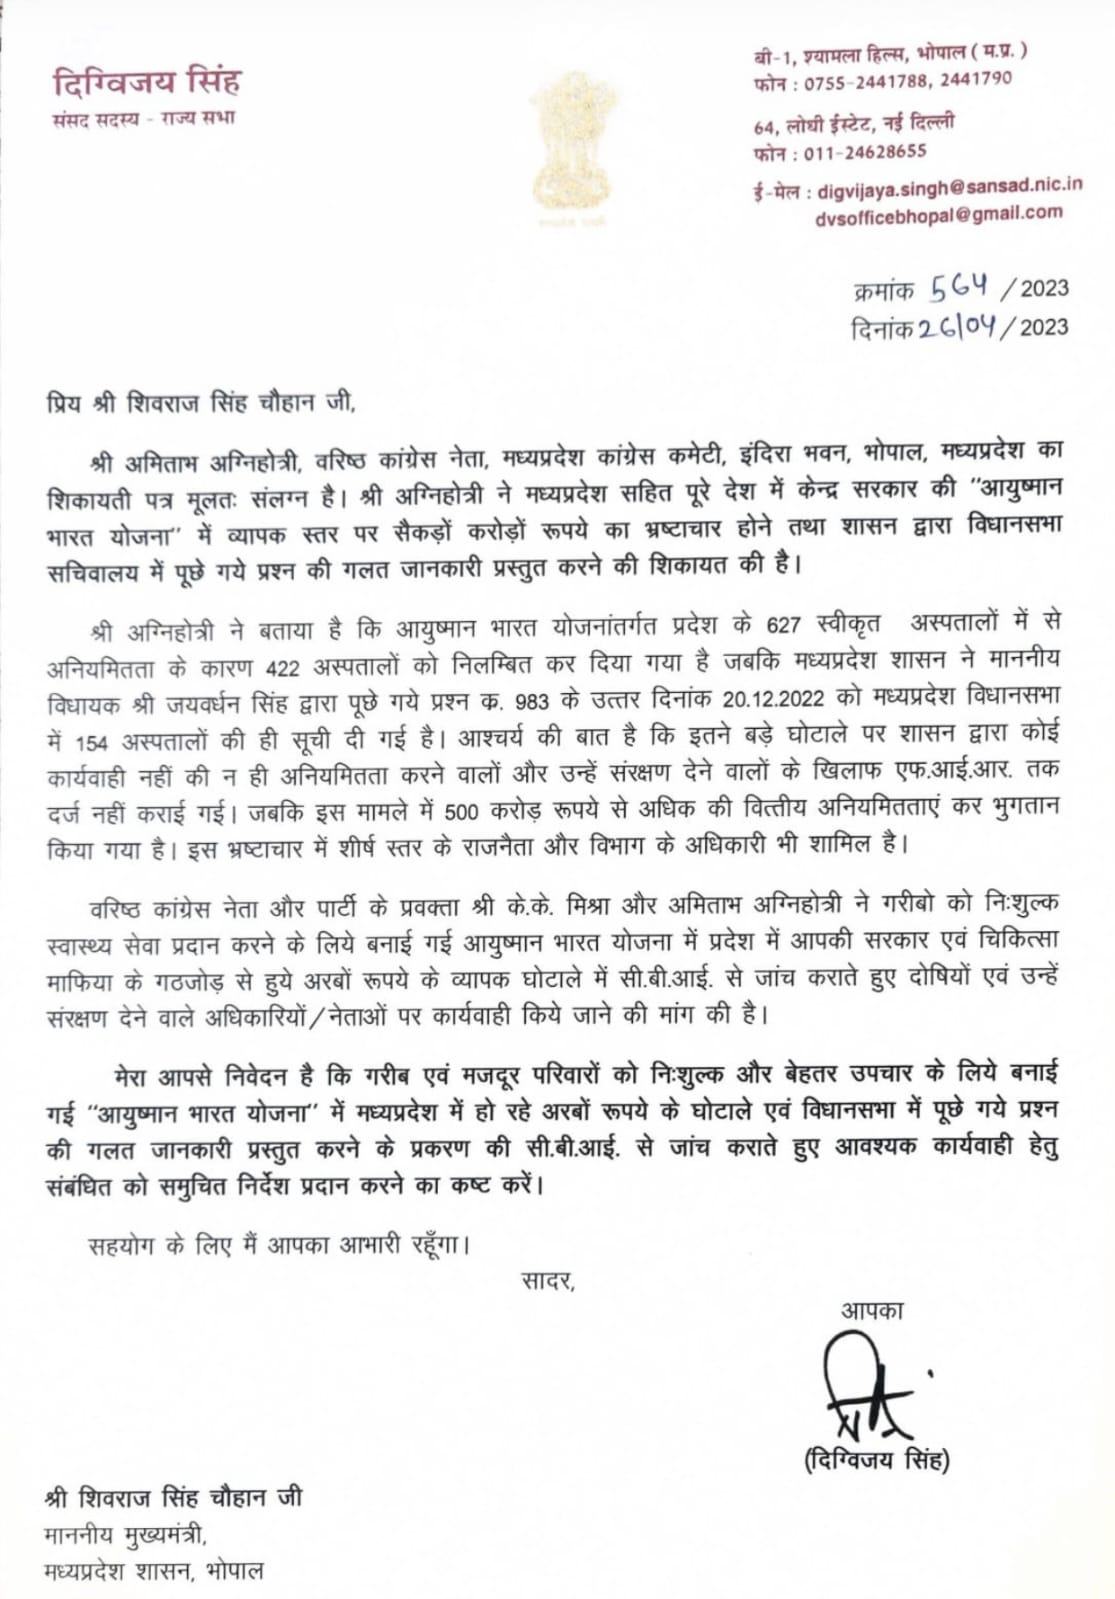 MP News : दिग्विजय सिंह ने की आयुष्मान भारत योजना घोटाले की सीबीआई जांच की मांग, सीएम शिवराज को लिखा पत्र